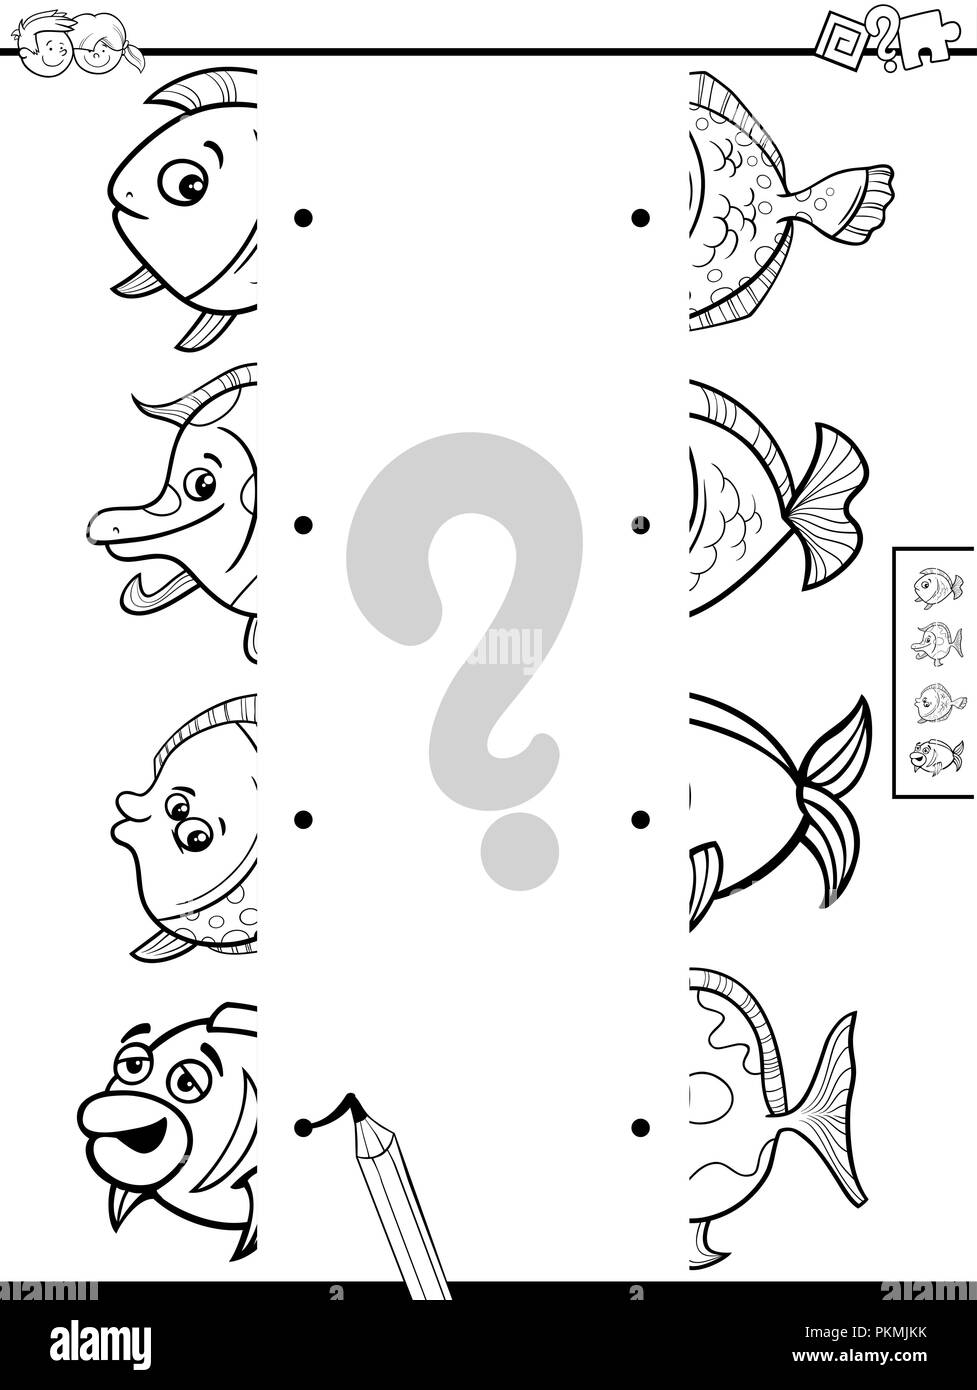 Cartoon noir et blanc Illustration de jeu éducatif des moitiés correspondantes d'images avec drôle de coloriage de poisson Illustration de Vecteur